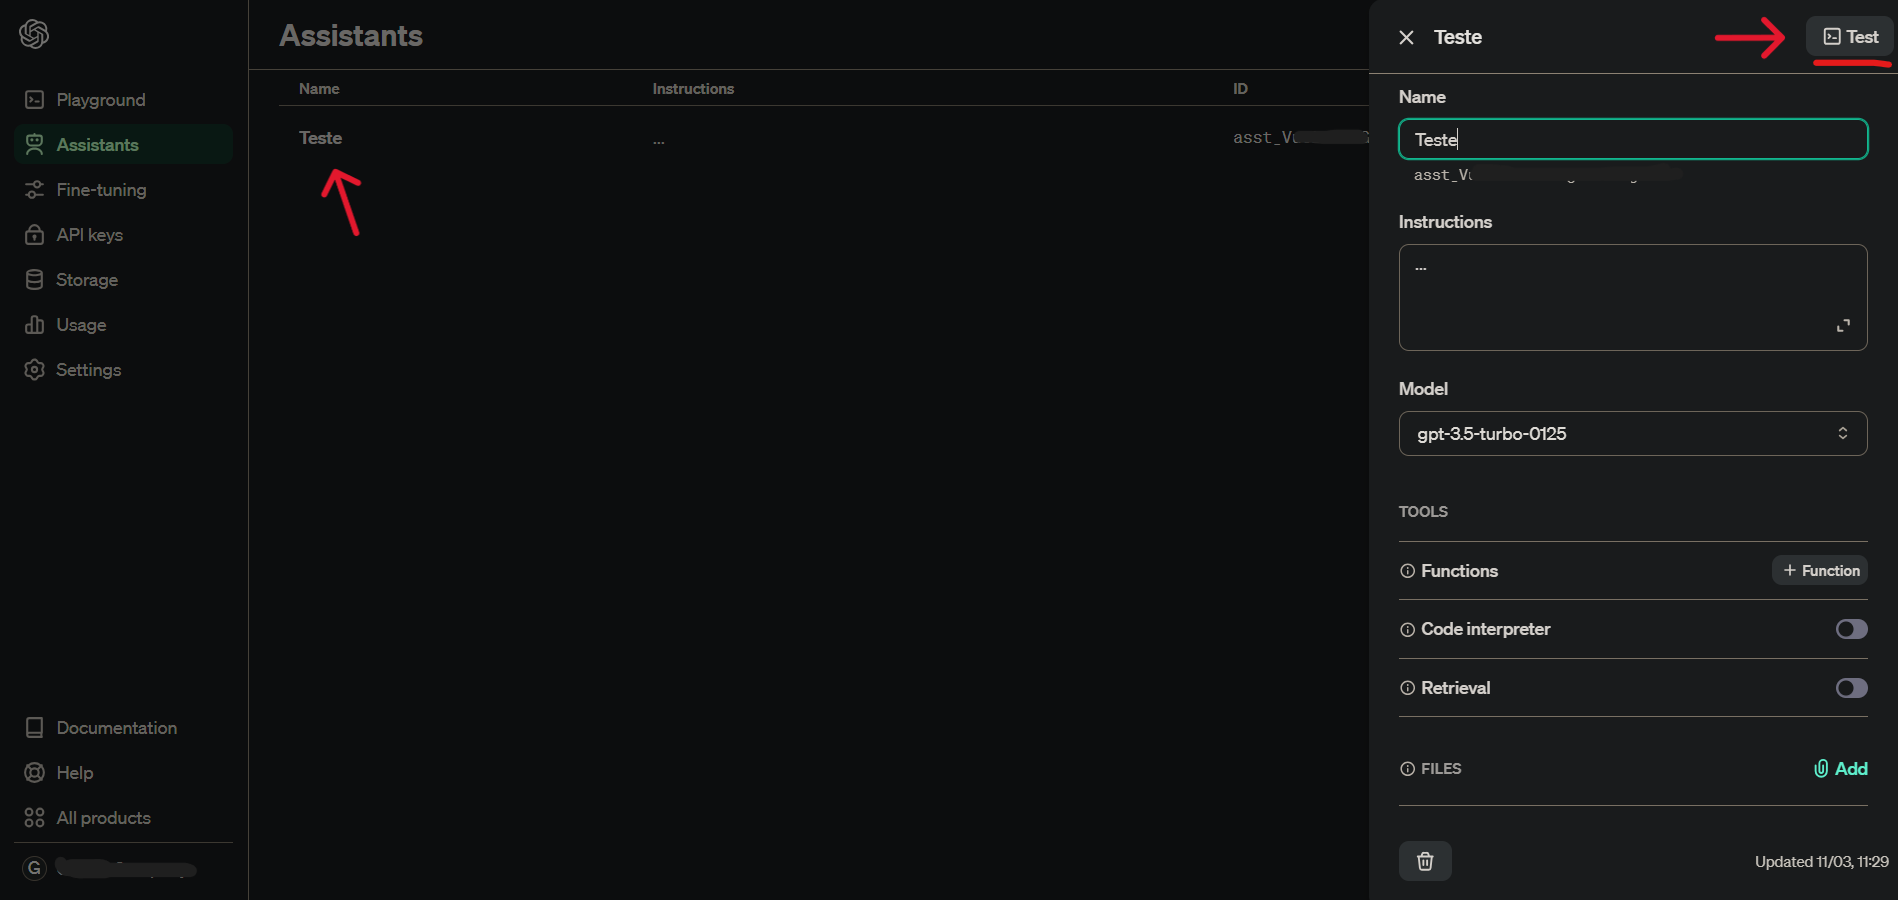 Página de configuração do Assistant na plataforma da OpenAI